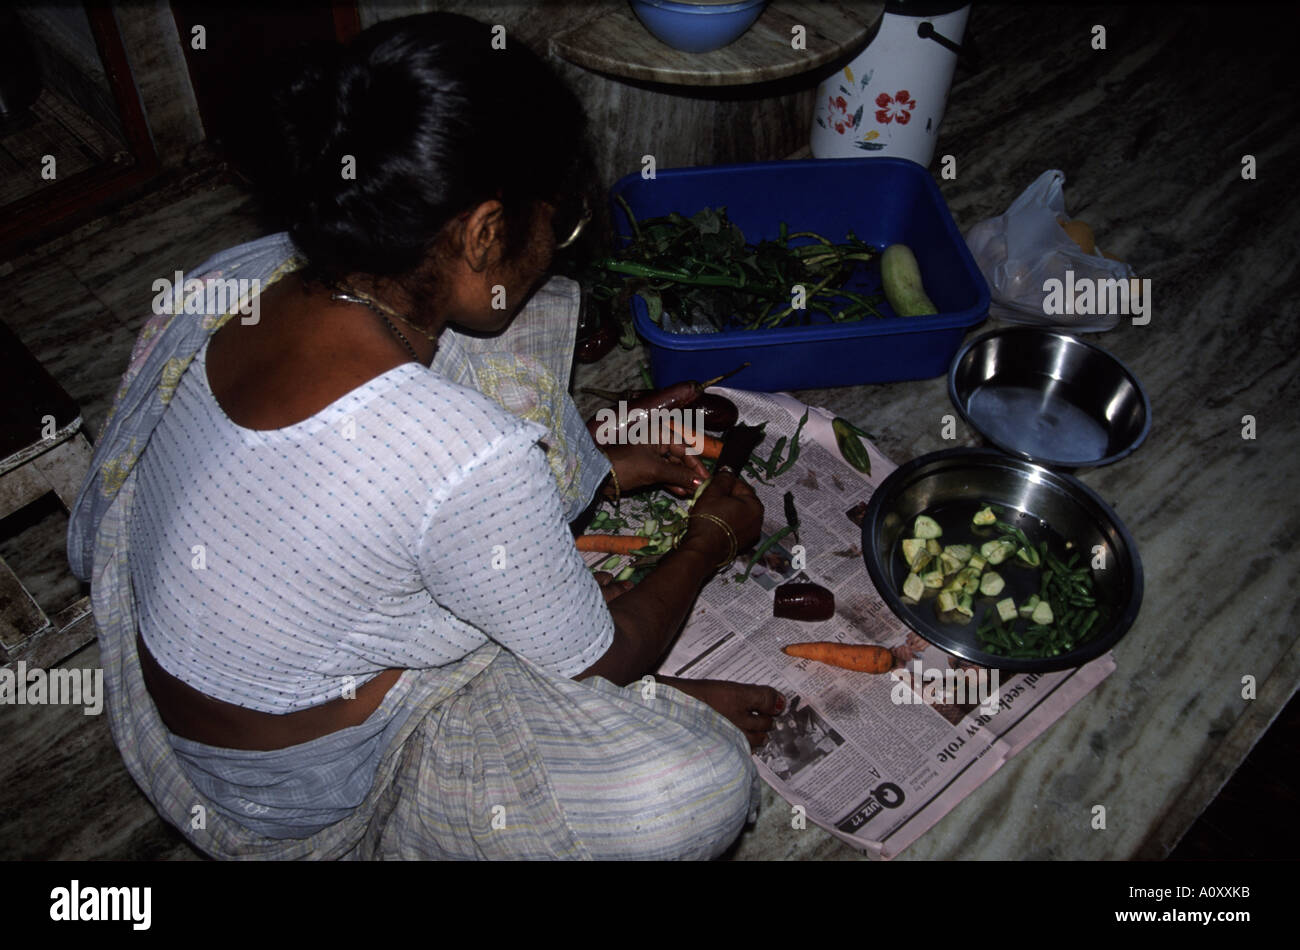 Preparación de verduras en el piso de una cocina en Kolkata (antes Calcuta, India Foto de stock